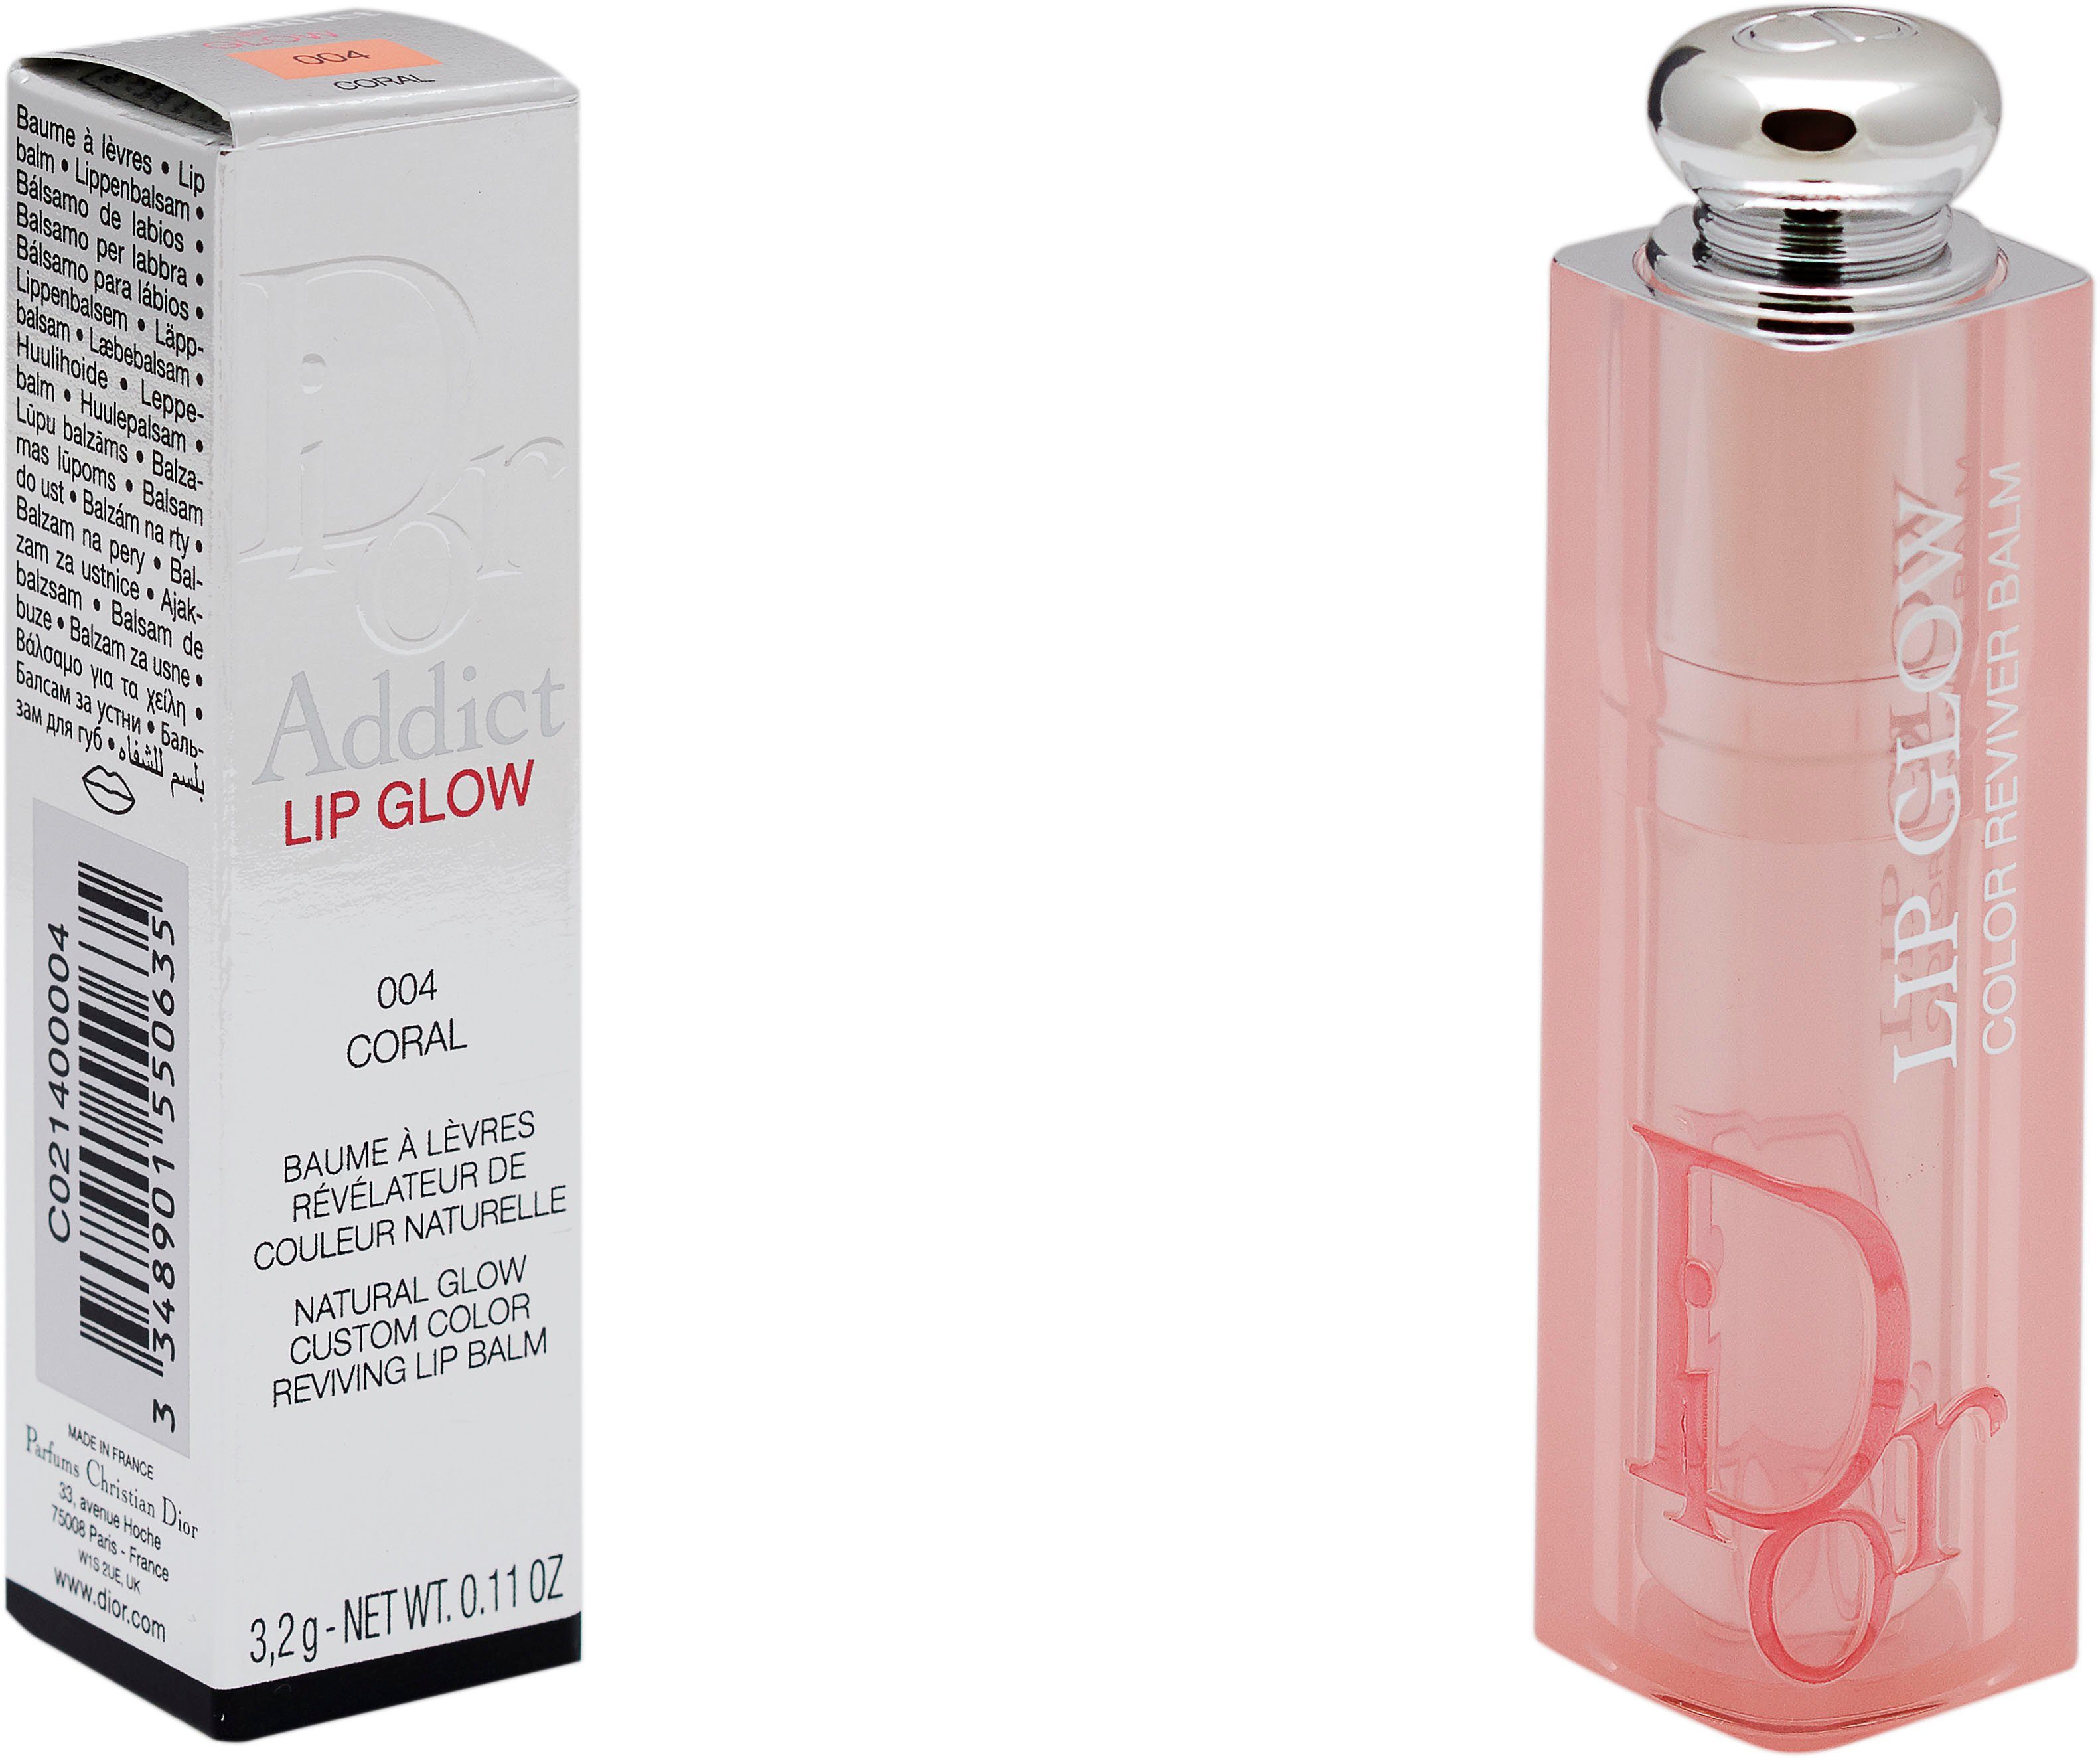 Lippenbalsam Dior 004 Dior Addict Glow Coral Lip